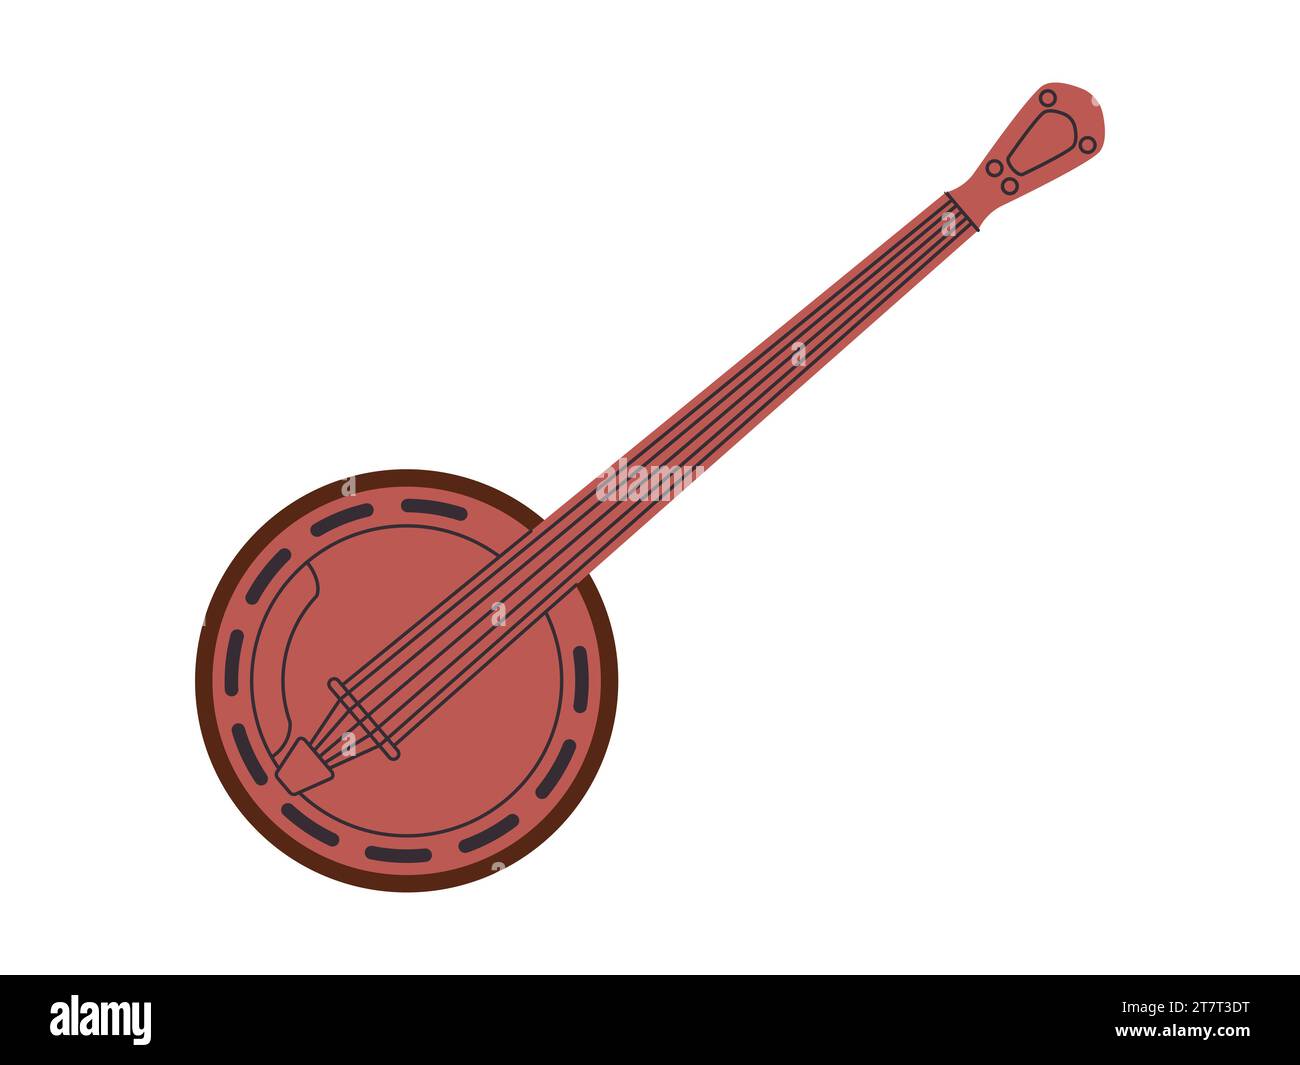 lo strumento musicale banjo bluegrass di colore marrone suona melodia ritmo sonoro musica folk attrezzatura tradizionale Illustrazione Vettoriale